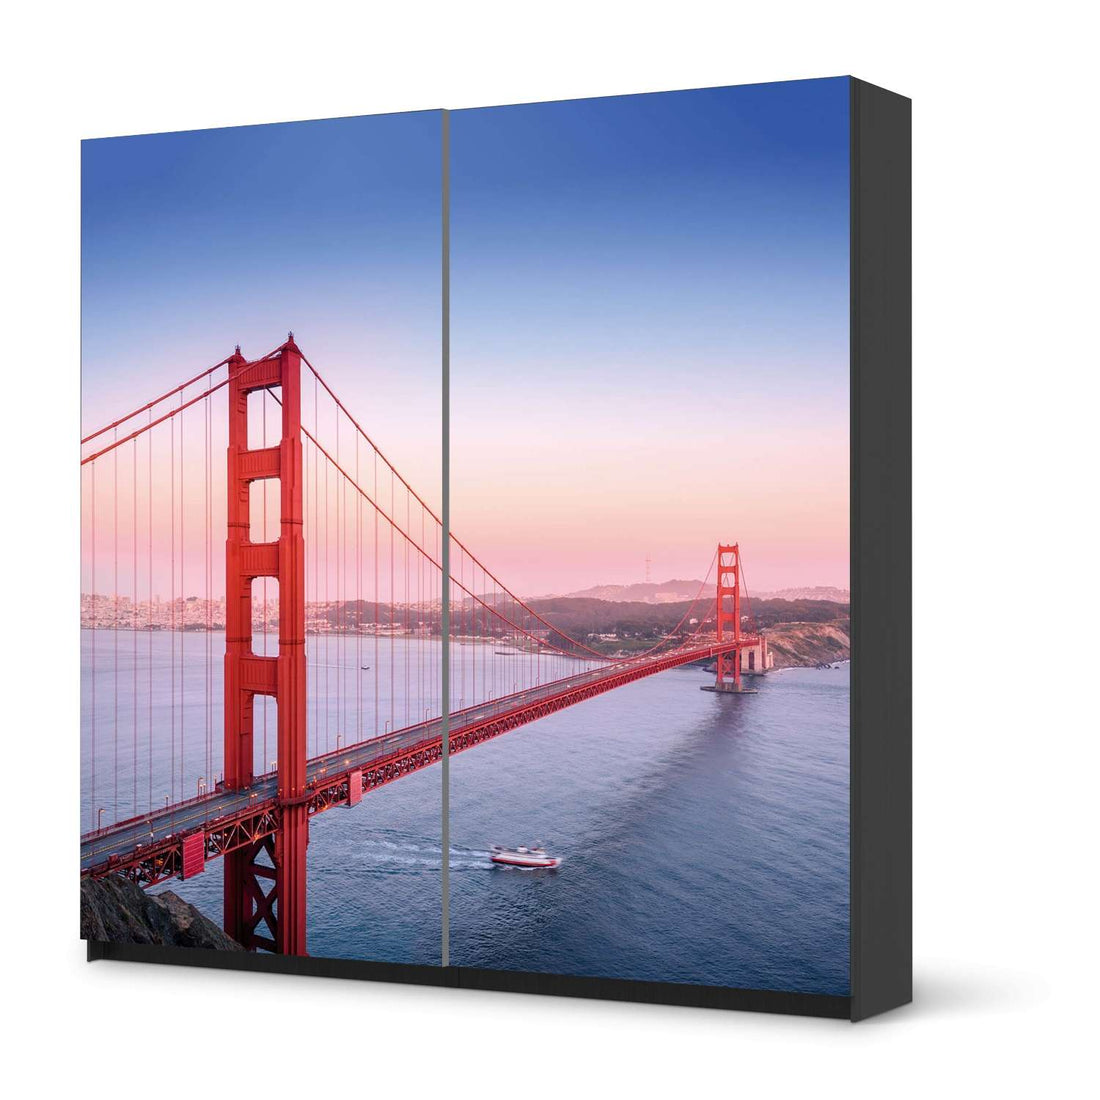 Möbel Klebefolie Golden Gate - IKEA Pax Schrank 201 cm Höhe - Schiebetür - schwarz